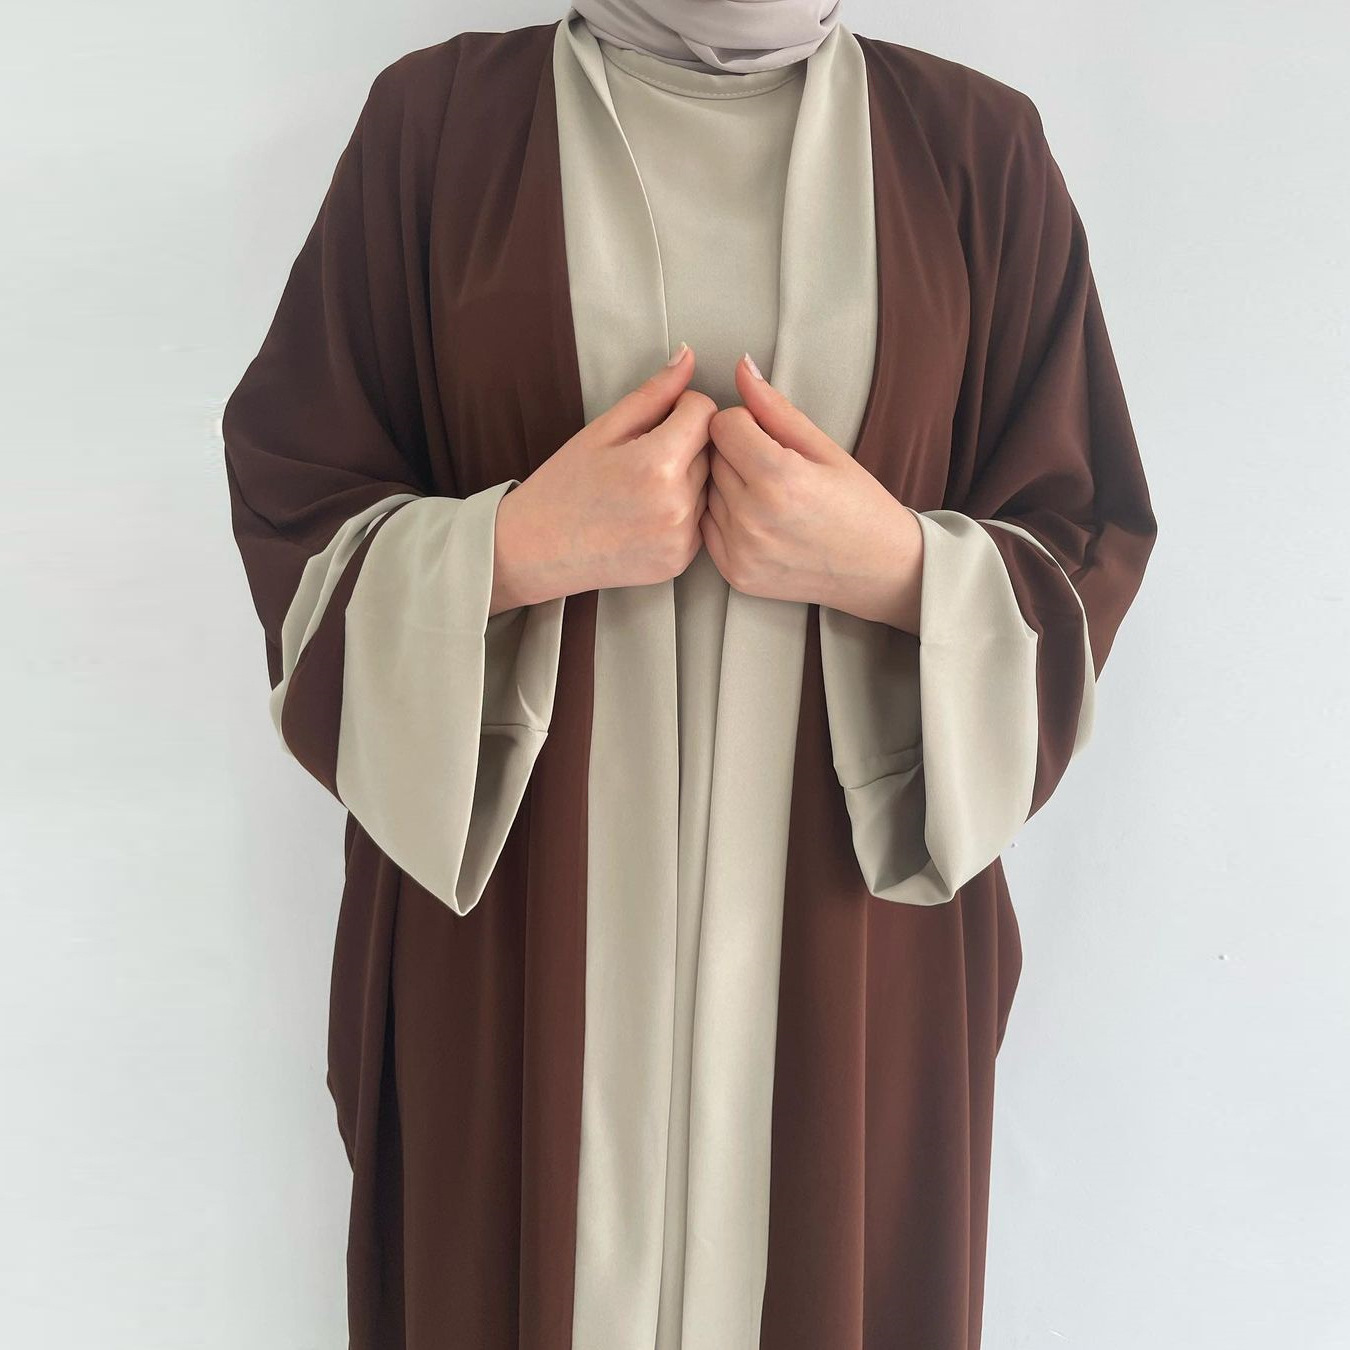 中东女装女士长袍马来印尼连衣裙时尚沙特阿拉伯风robe musli set